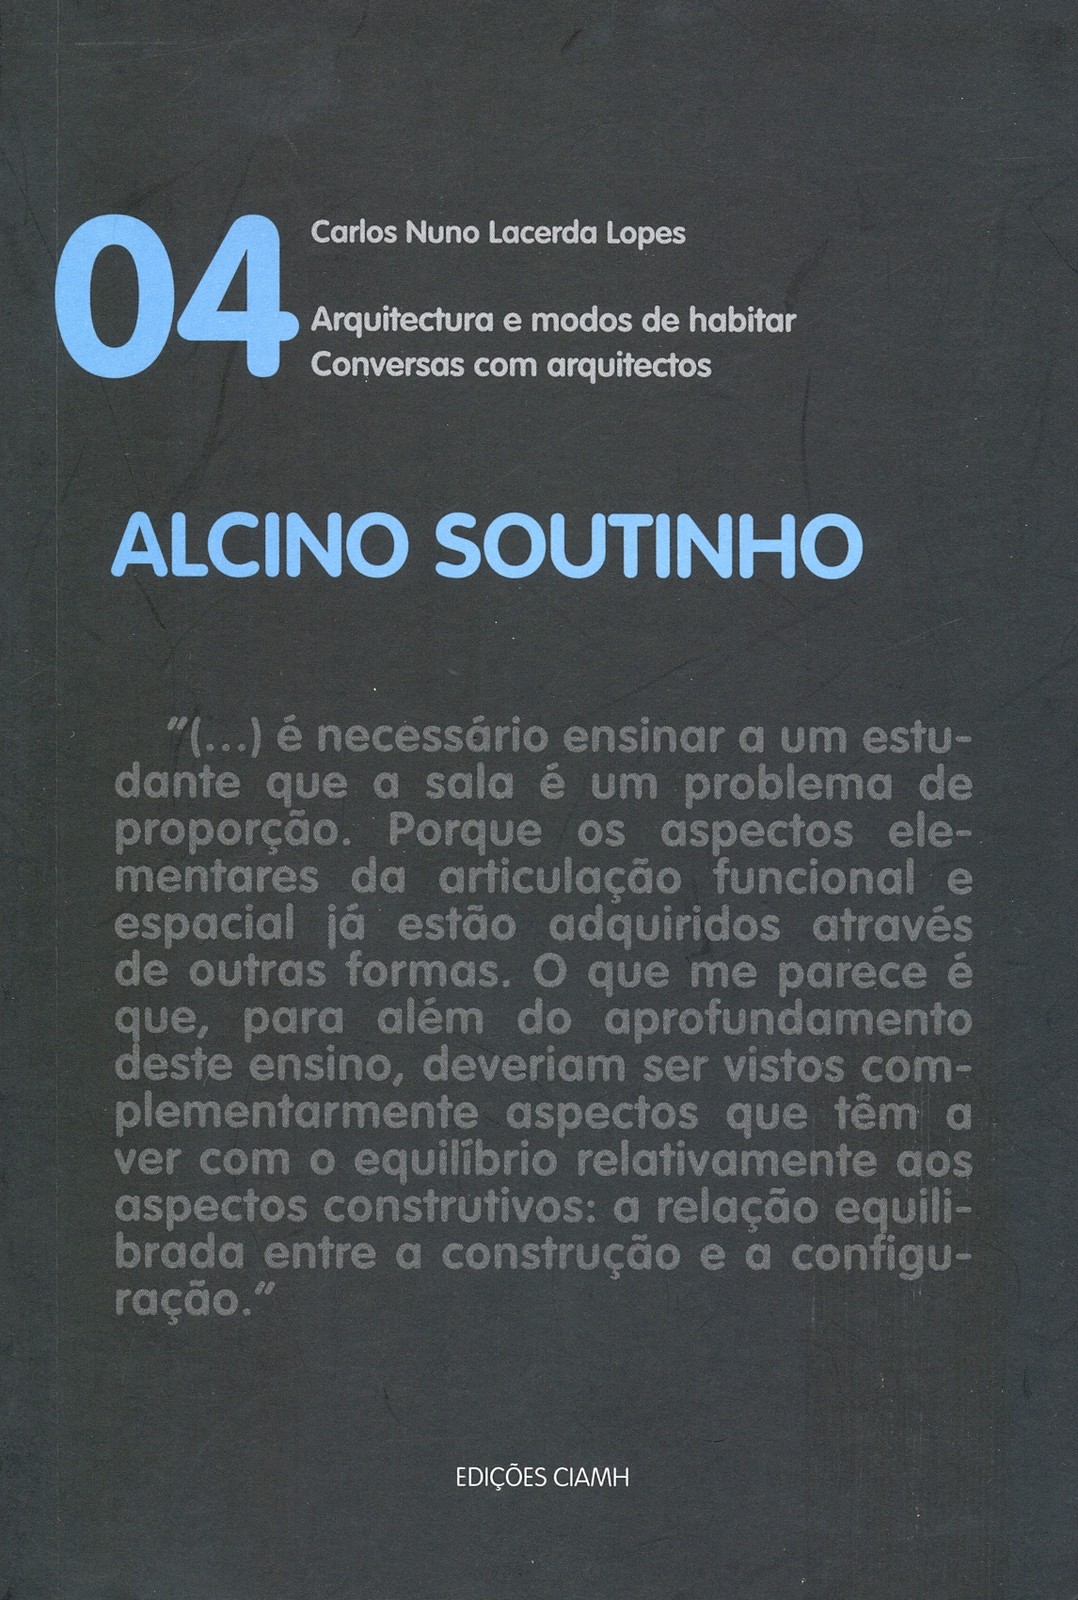 Carlos Nuno Lacerda Lopes - Arquitectura e Modos de Habitar 4, Alcino Soutinho